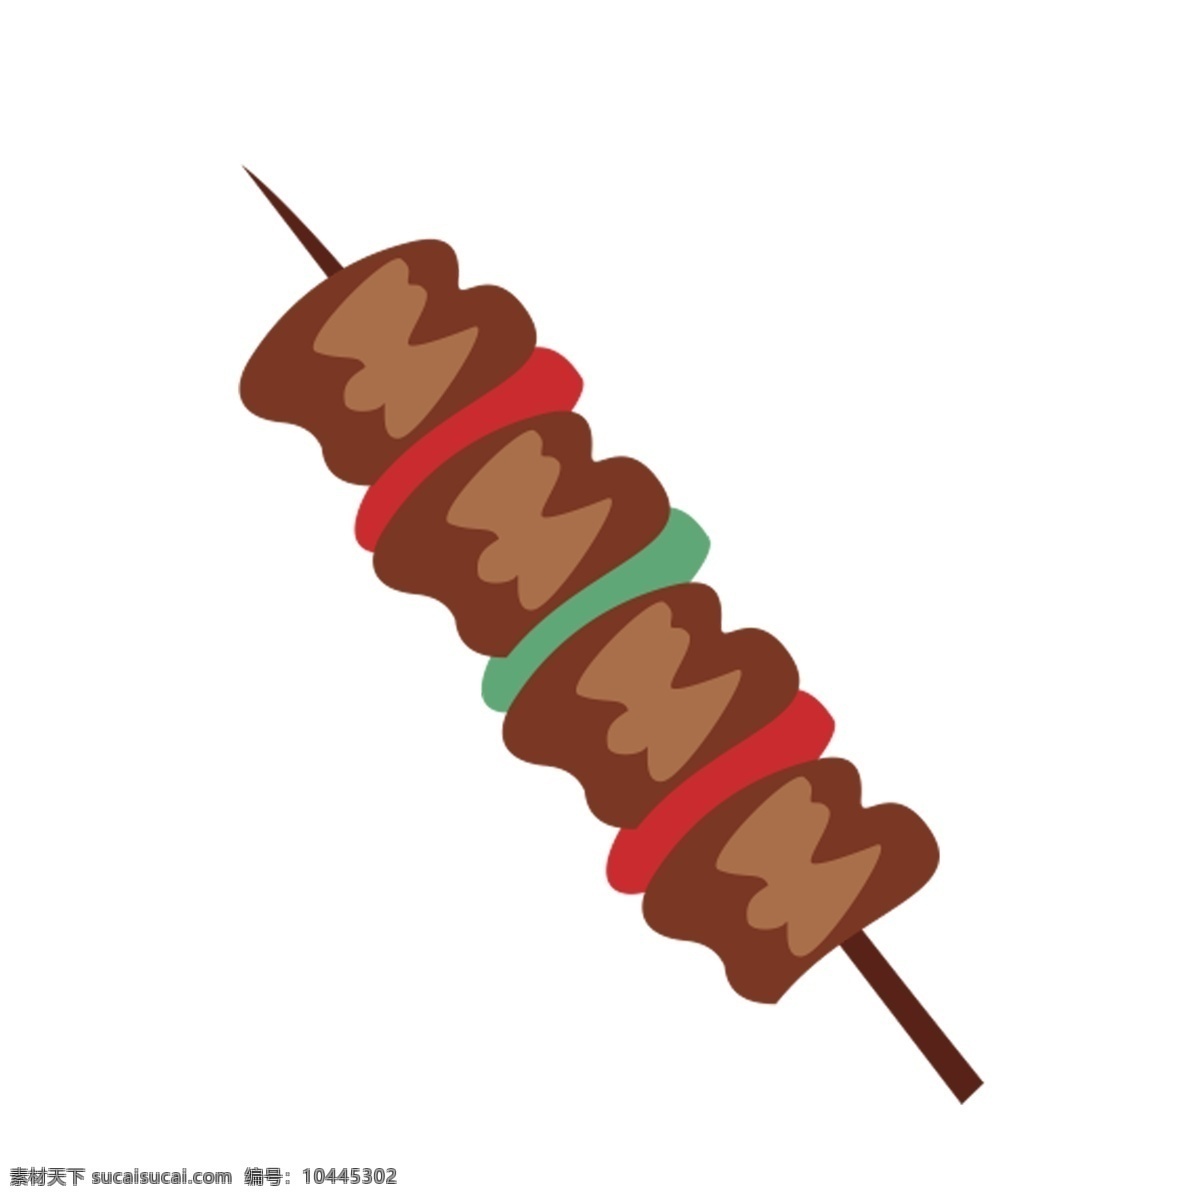 彩色 手绘 烧烤 美食 元素 食物 蔬菜 卡通图标 吃的 串串 矢量图